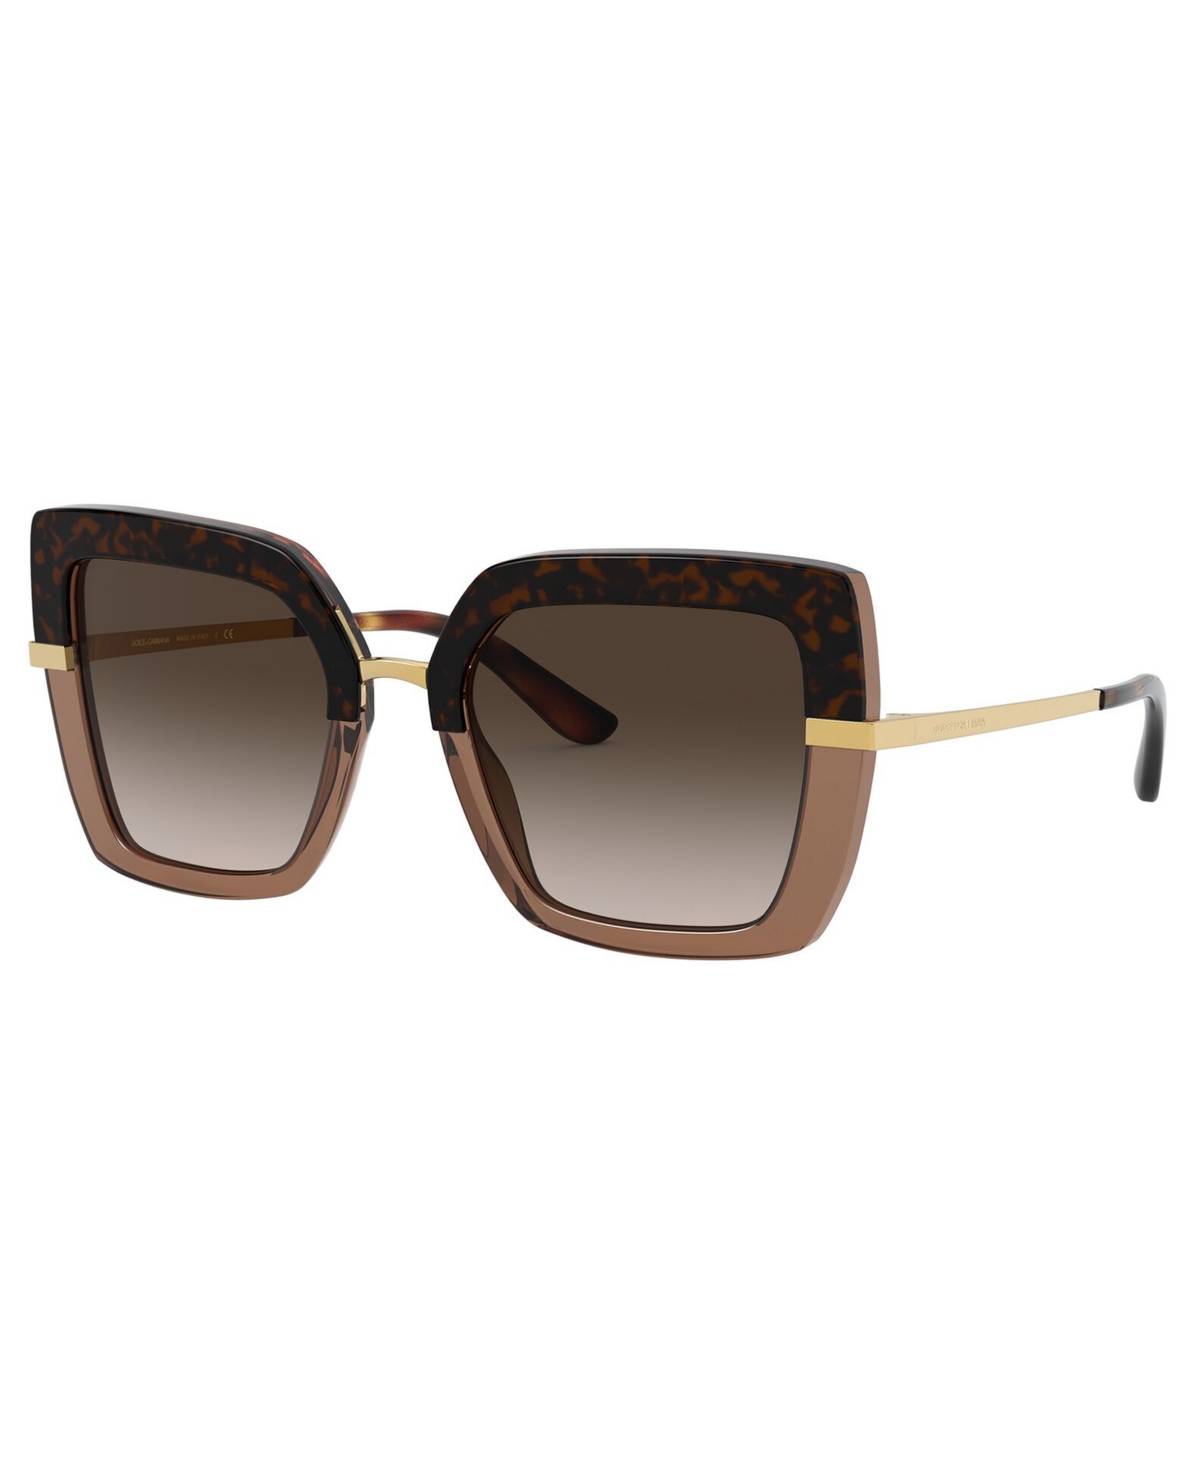 Dolce & Gabbana Women's Sunglasses, Dg4373 In Top Havana On Transp Brown,brown Gradien